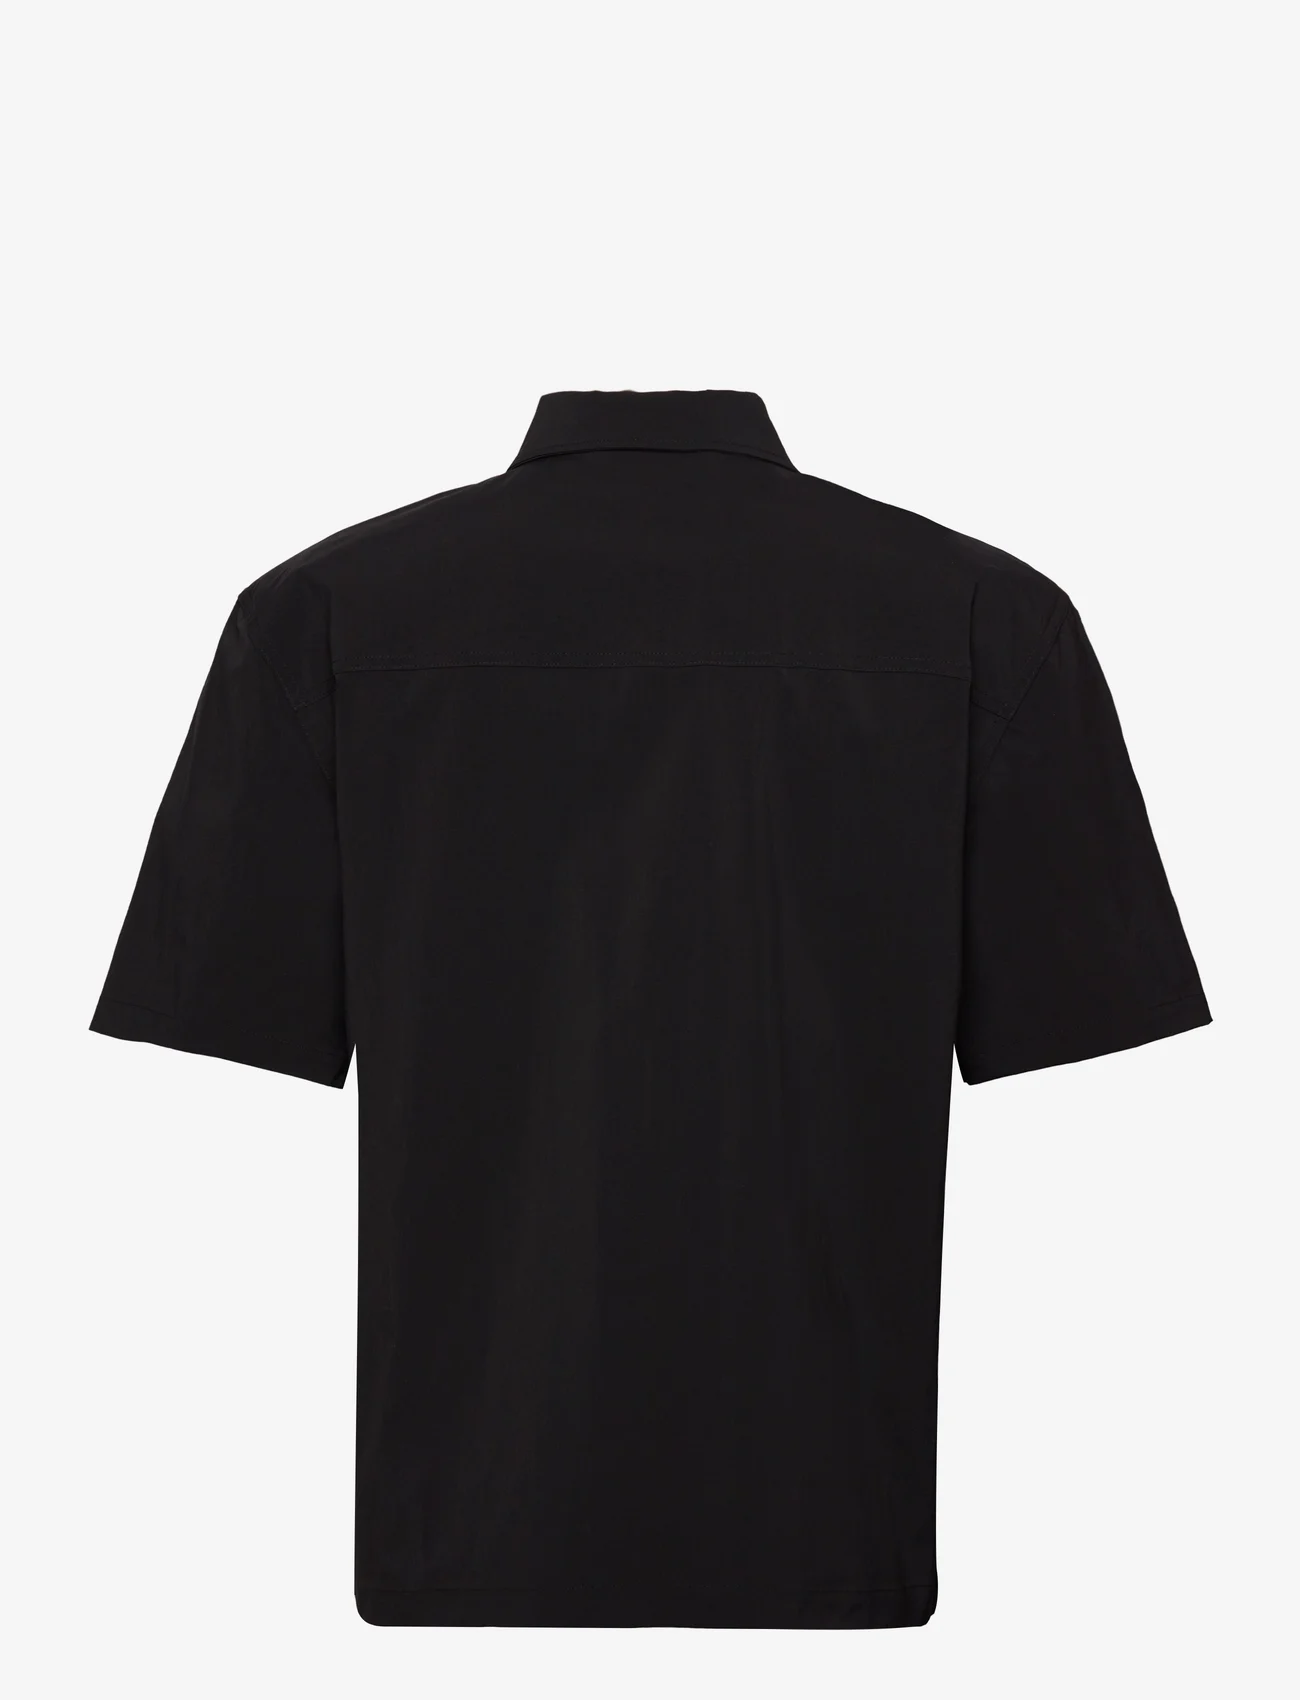 HAN Kjøbenhavn - Nylon Short Sleeve Shirt - peruskauluspaidat - black - 1